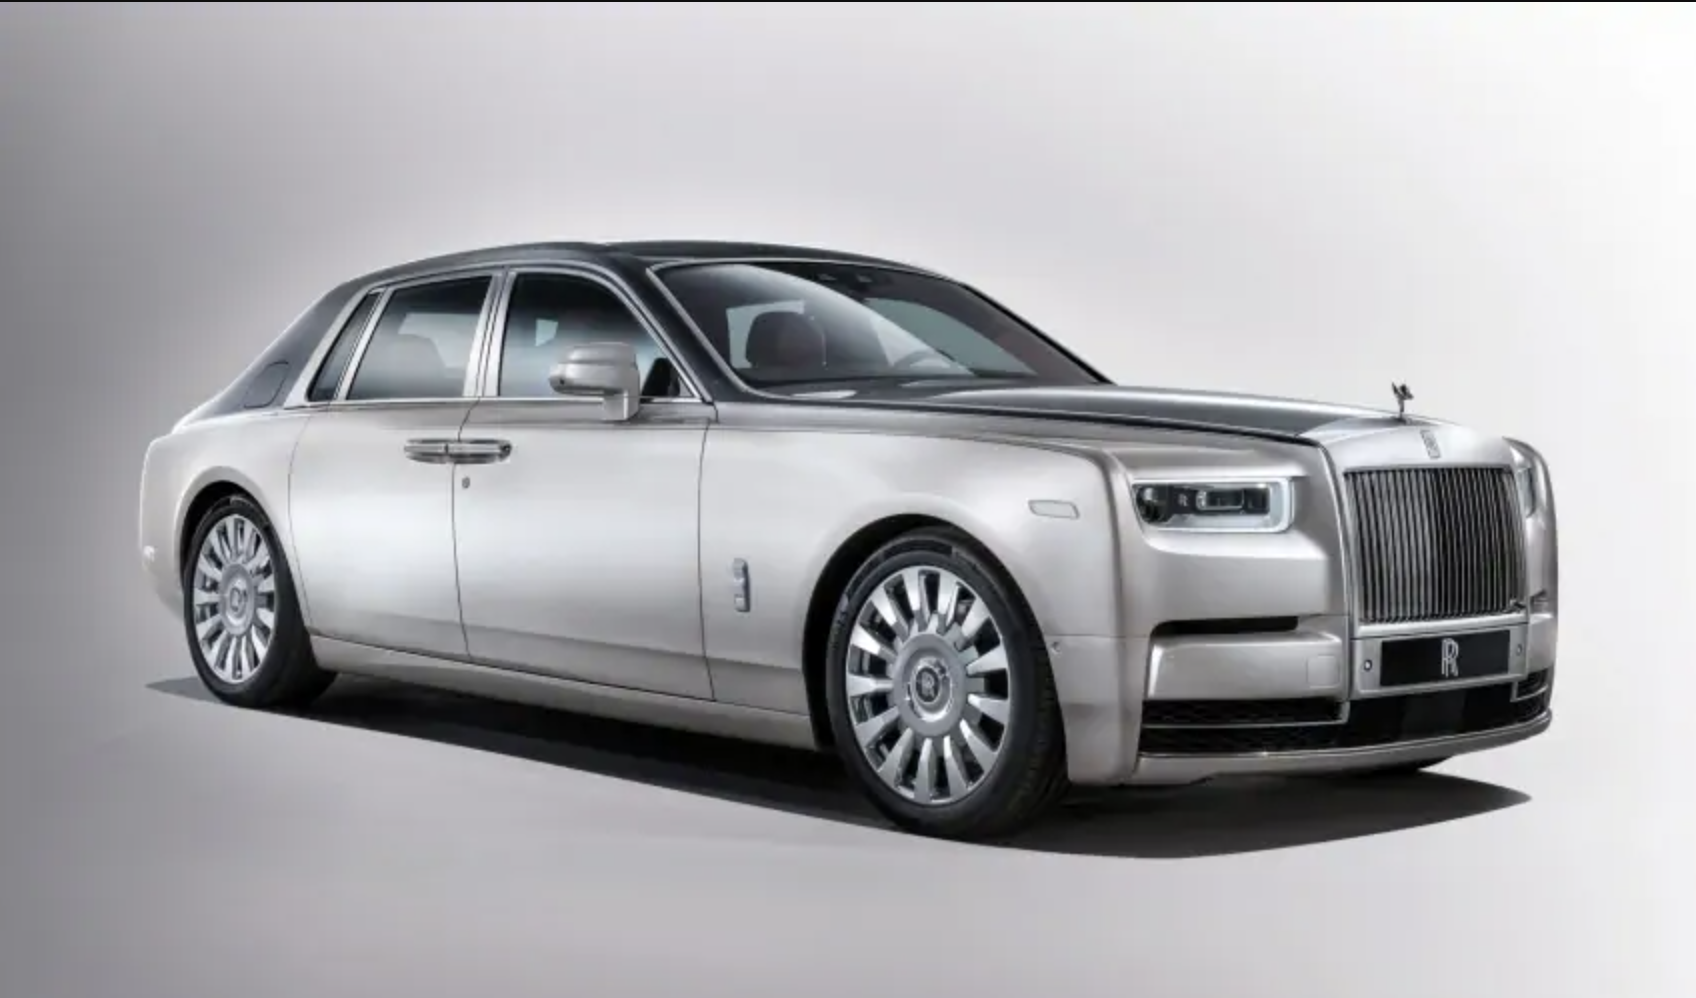 Pajak Tahunan Roll-Royce Phantom Bisa Untuk Membeli Satu Avanza Bekas